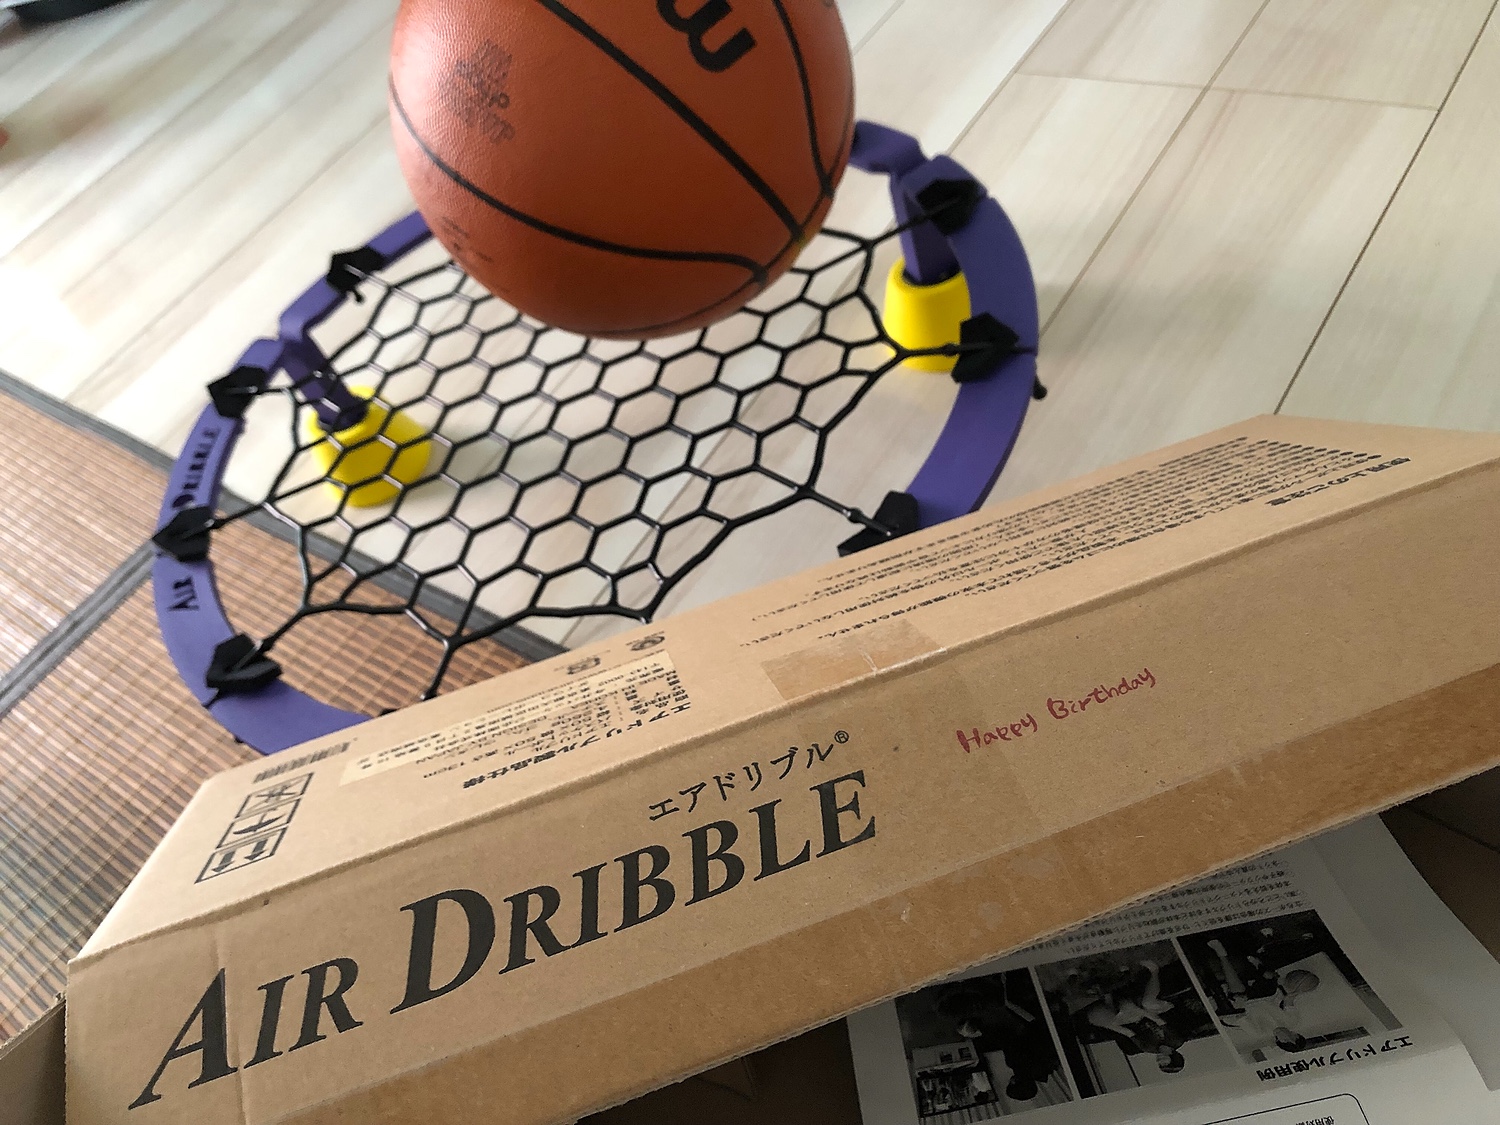 おしゃれ】 エアドリブル専用ゴムネット 送料無料 バスケ バスケット スポーツ アウトドア ドリブル練習 室内 静か 音が響きにくい 低騒音 自主練  リビングで練習 AirDribble バスケットボール トレーニング用品